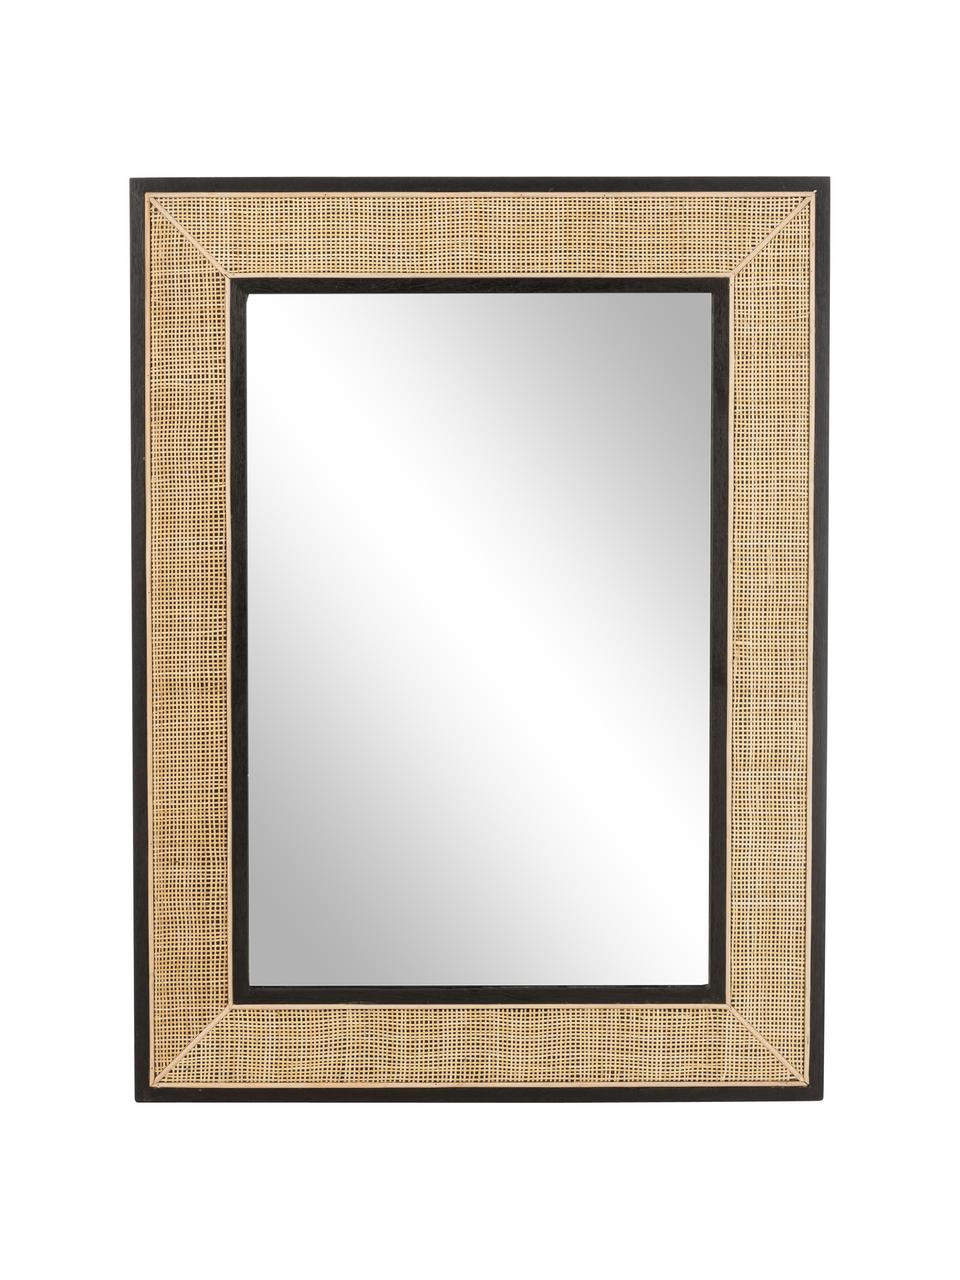 Nástěnné zrcadlo z ratanu Molly, Světlé dřevo, Š 90 cm, V 120 cm